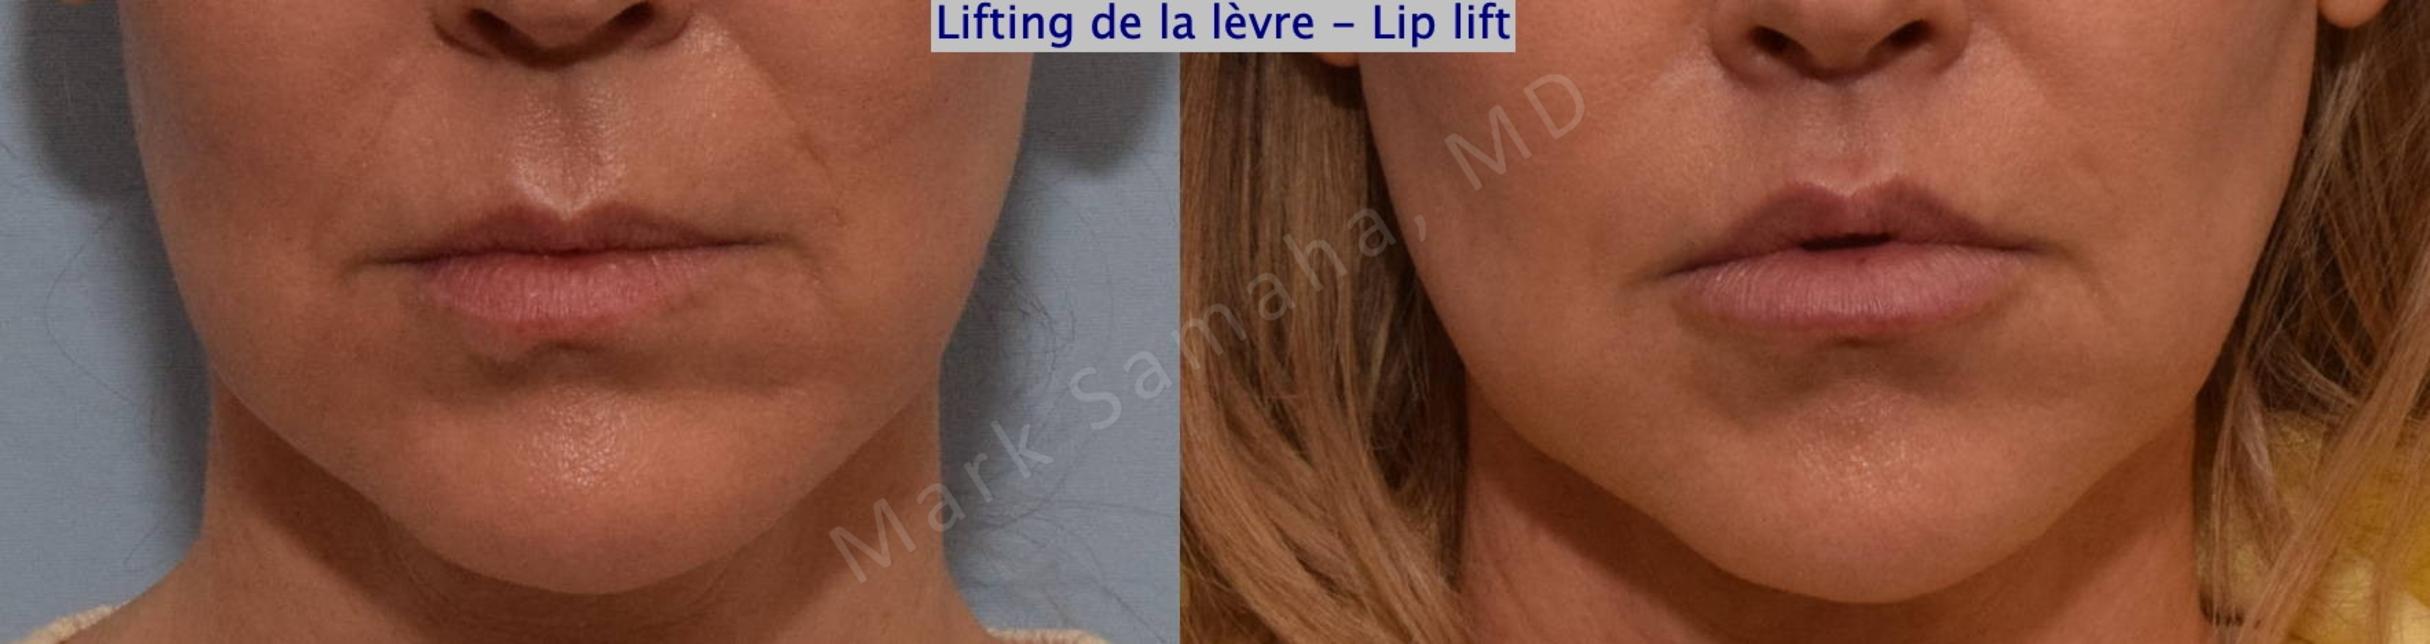 Before & After Lip Lift / Lifting de la lèvre supérieure Case 201 Front View in Mount Royal, QC